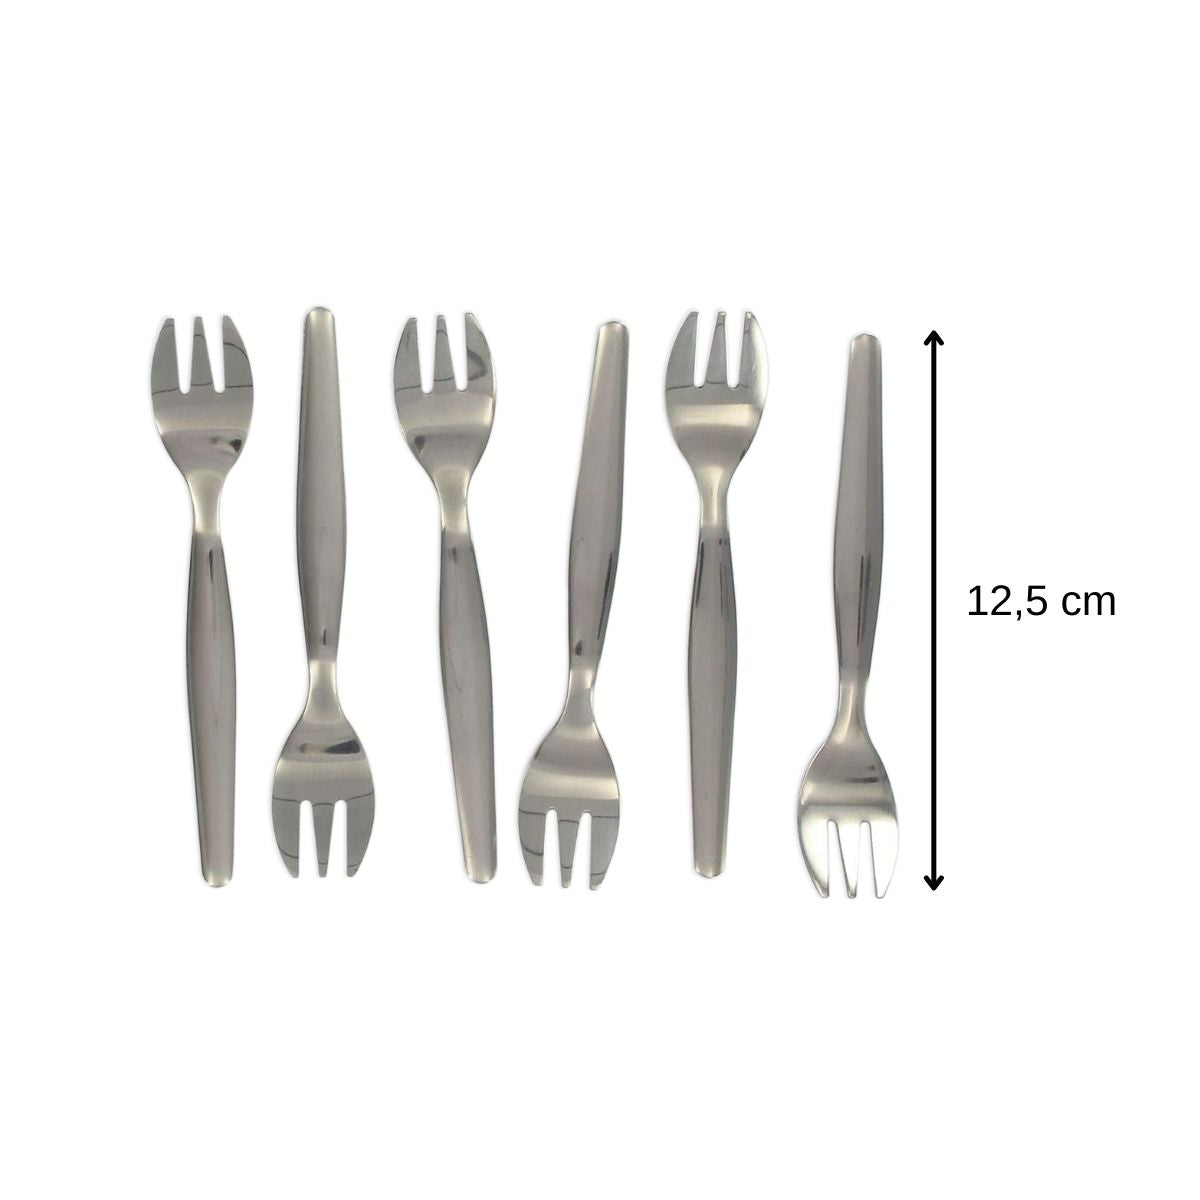 6 petites fourchettes en acier inoxydable sur carte - 12,5 cm